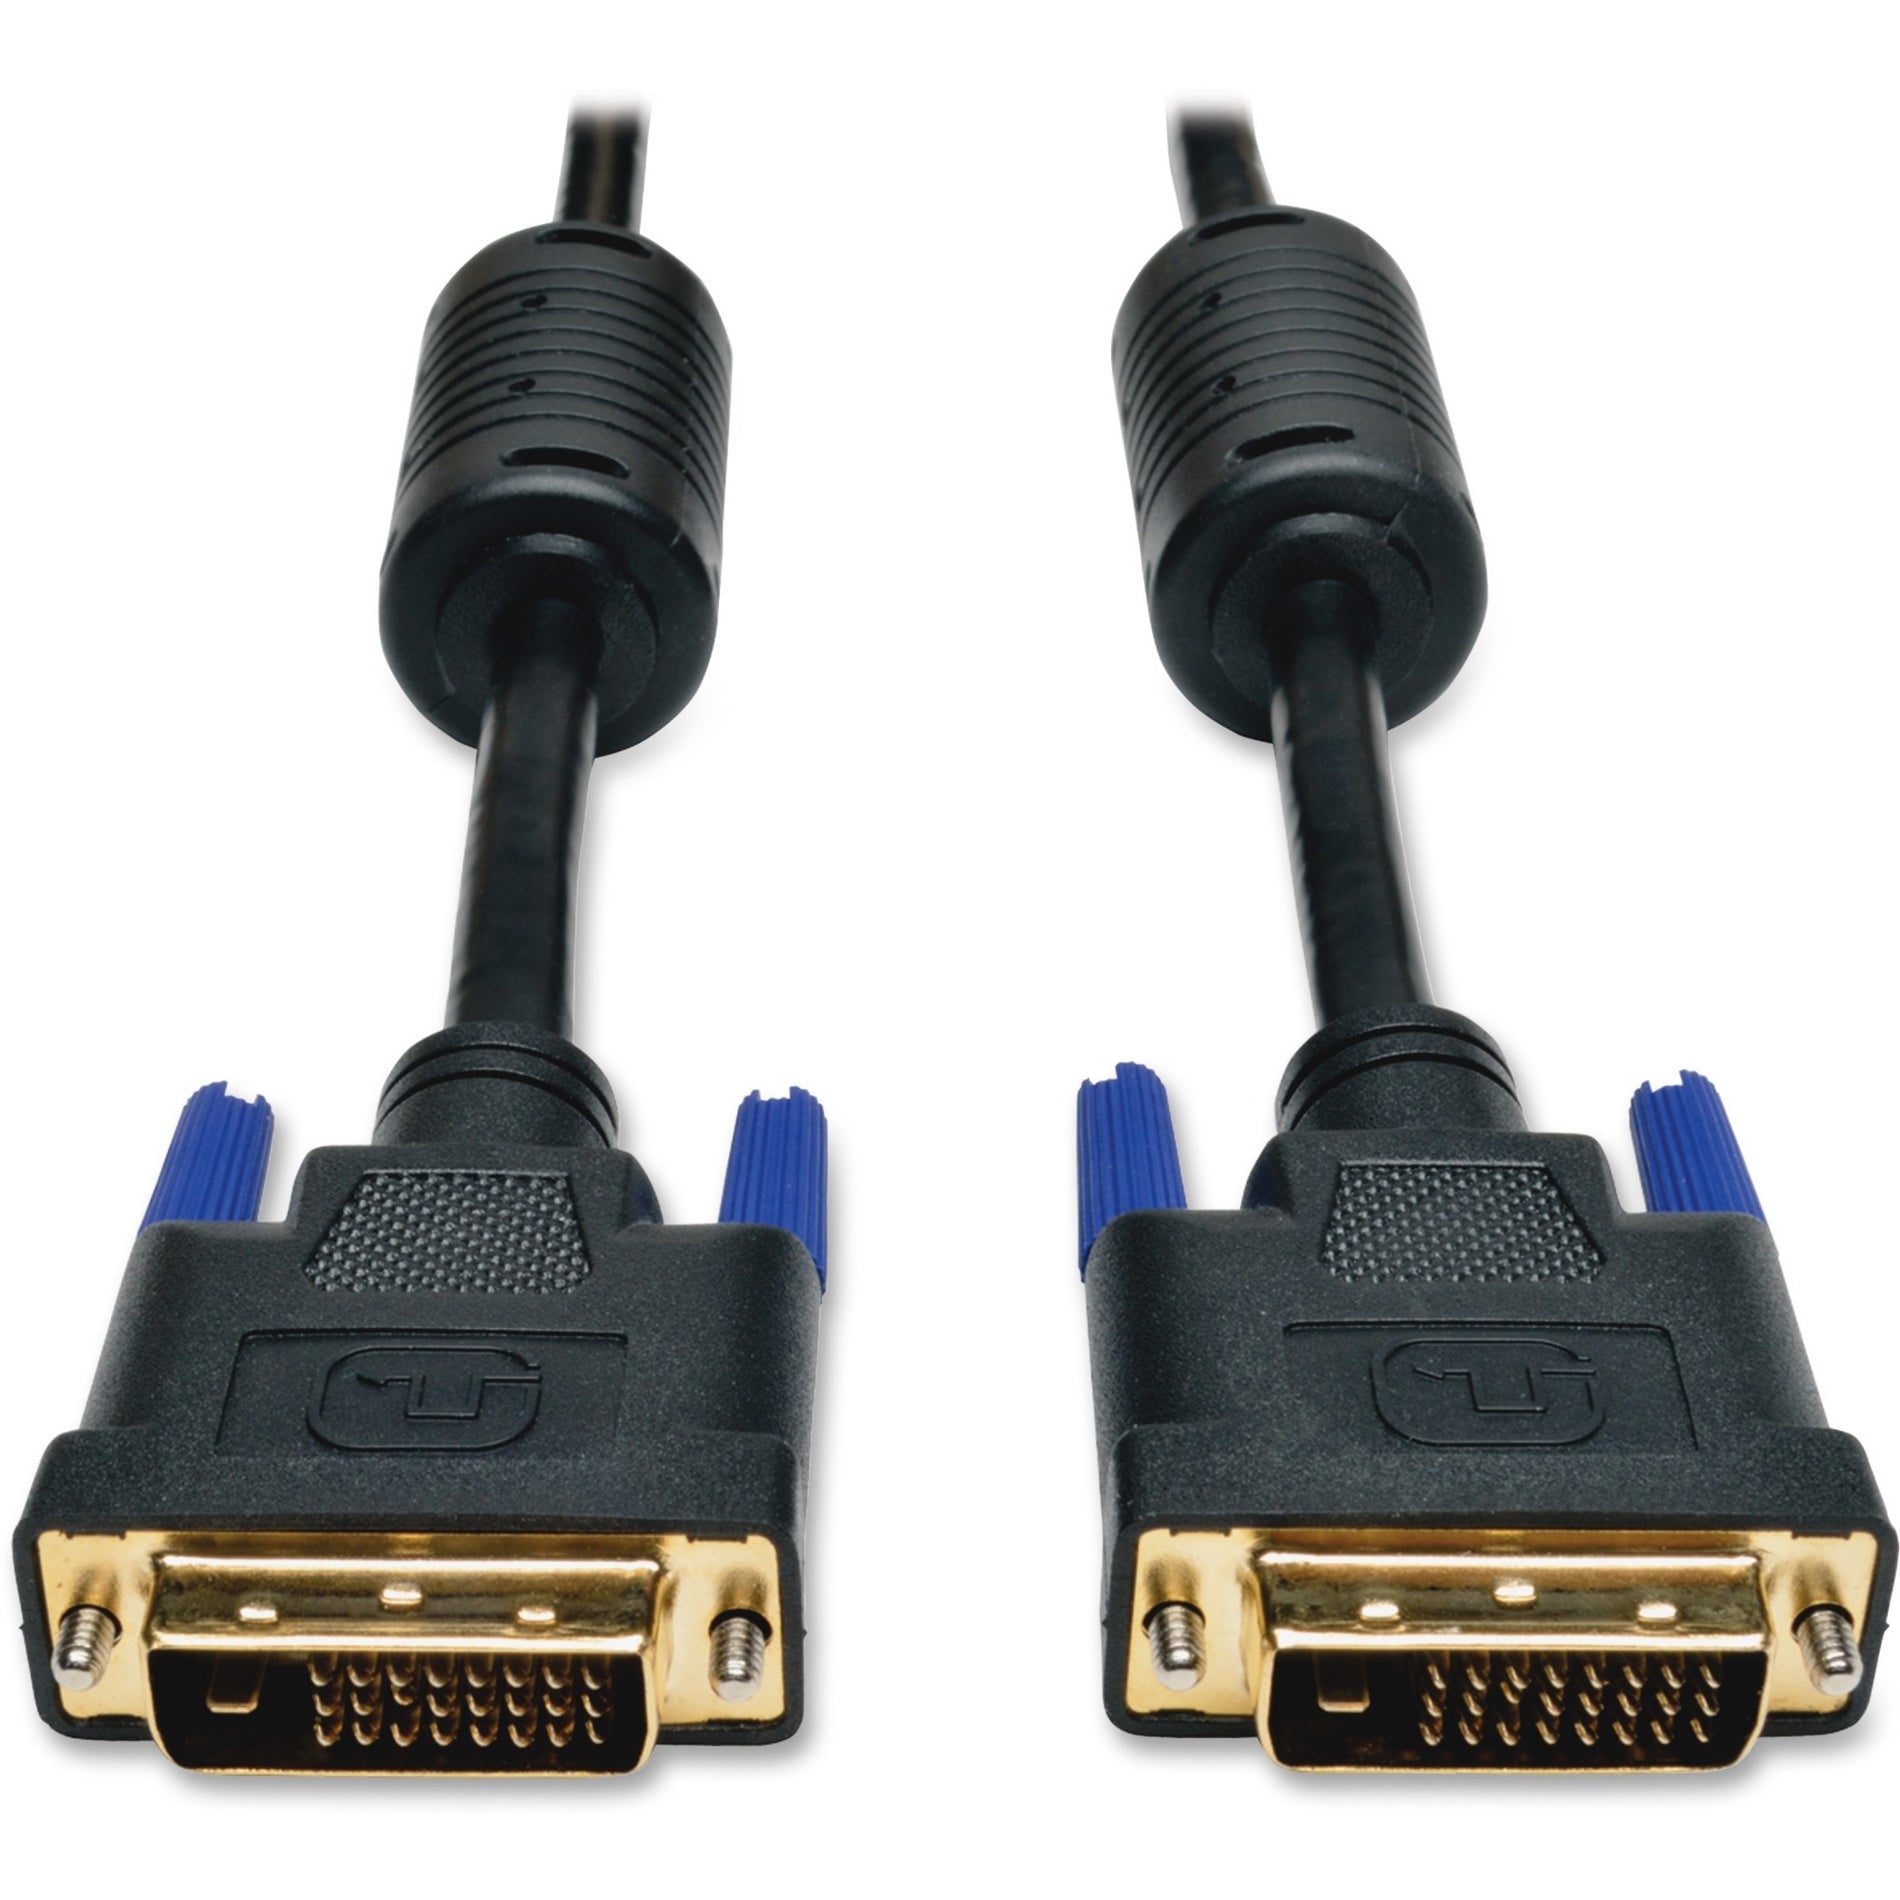 Tripp Lite P560-006 DVI Dual Link Cable, 6ft, Black